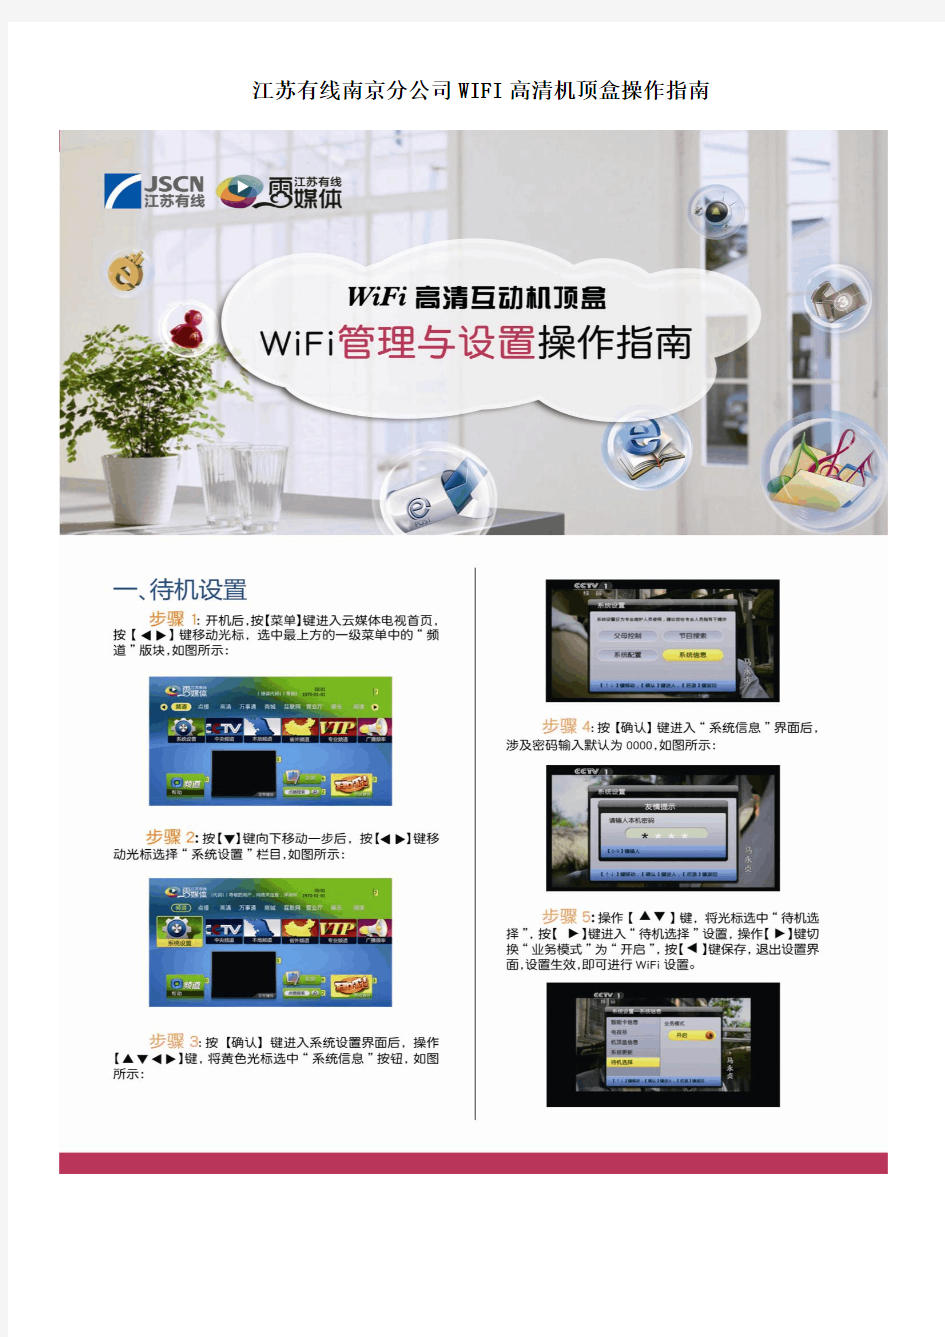 江苏有线南京WIFI高清机顶盒设置与管理操作介绍